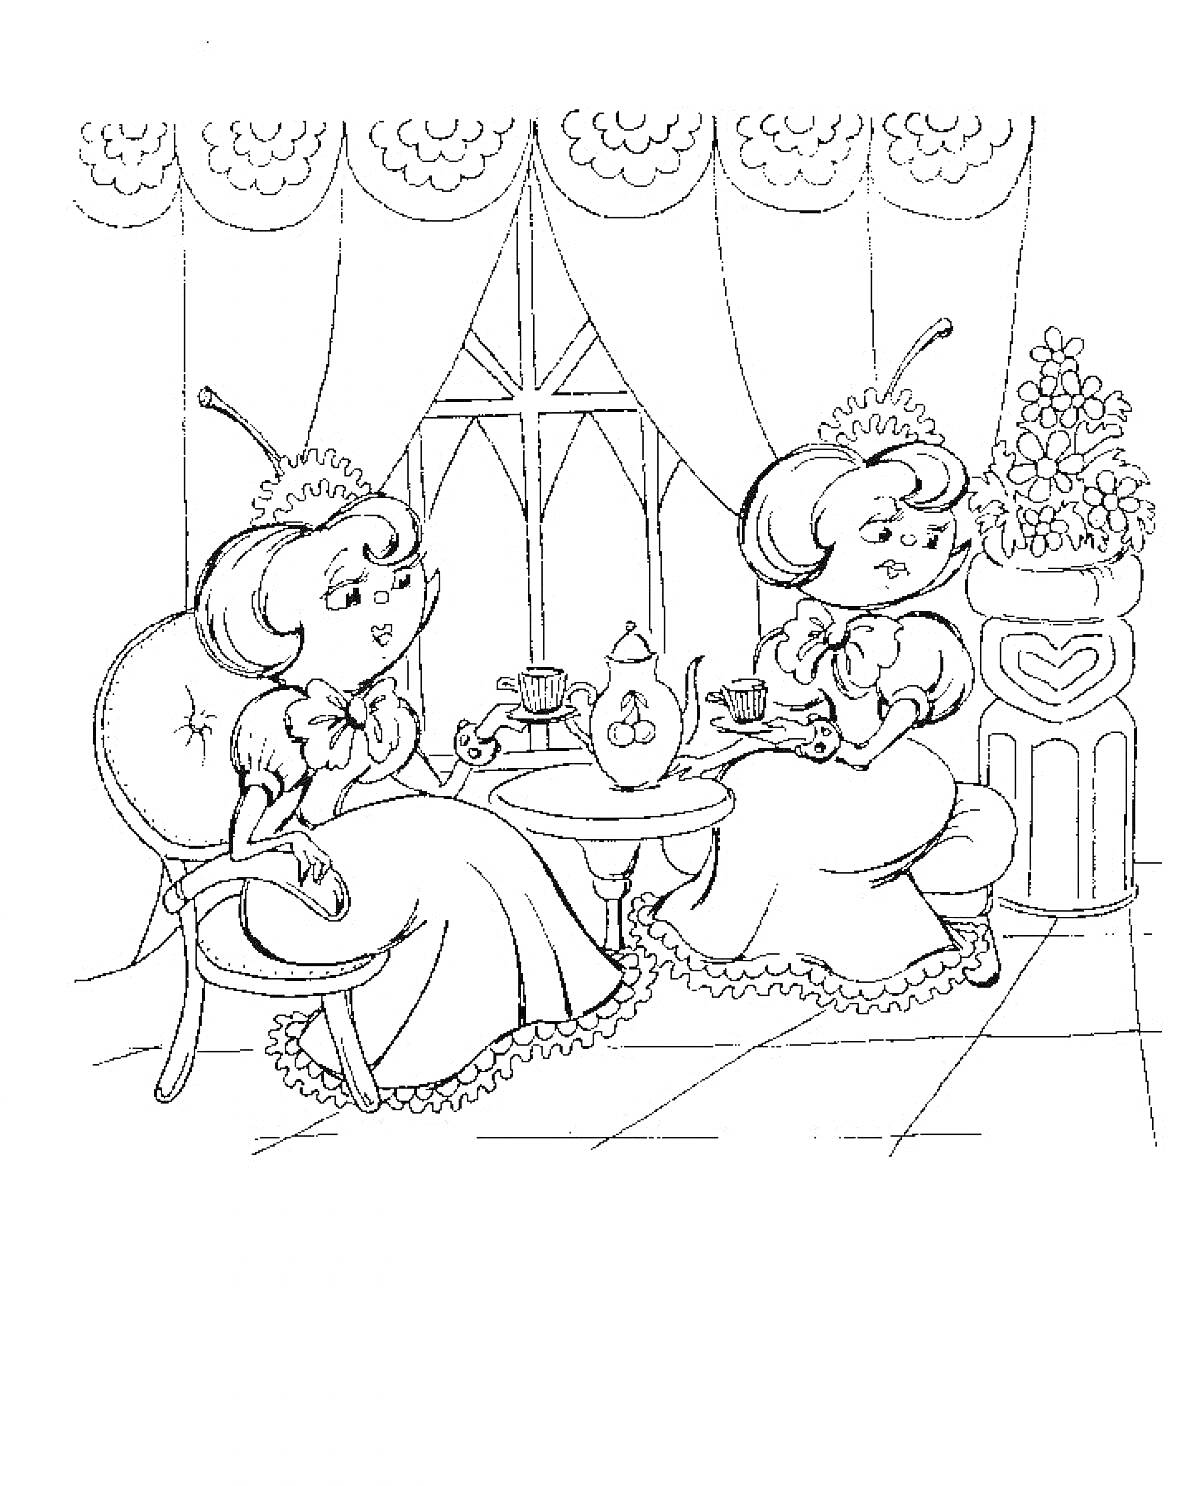 Миссис Черешня и миссис Вишенка за чаепитием в гостиной с окном, занавесками и цветочным горшком